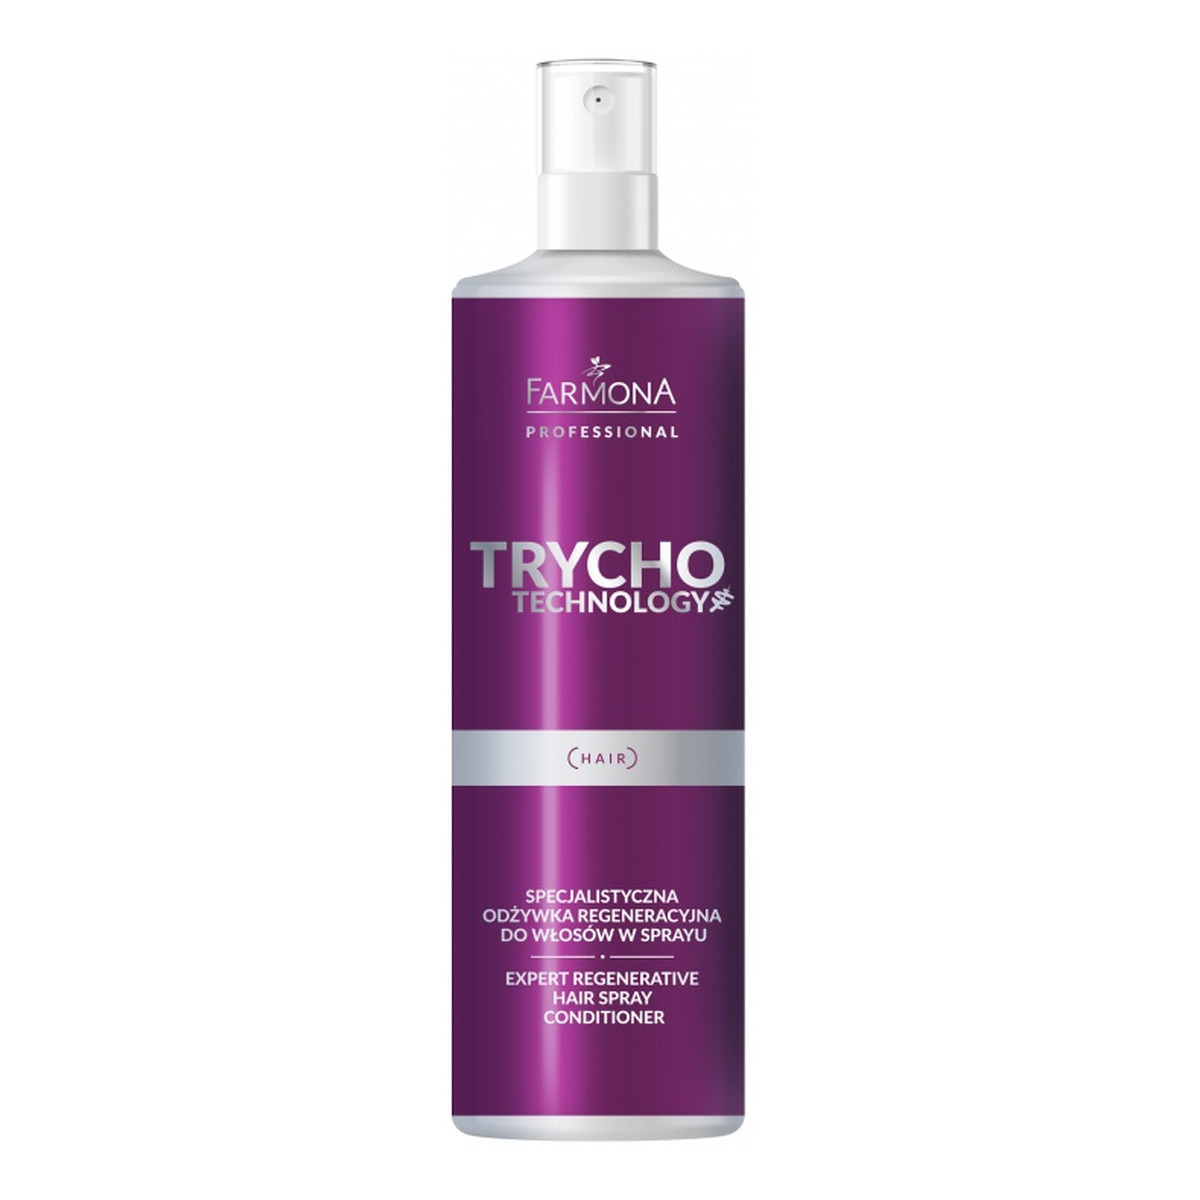 Farmona Professional Trycho Technology Specjalistyczna odżywka regeneracyjna do włosów w sprayu 200ml